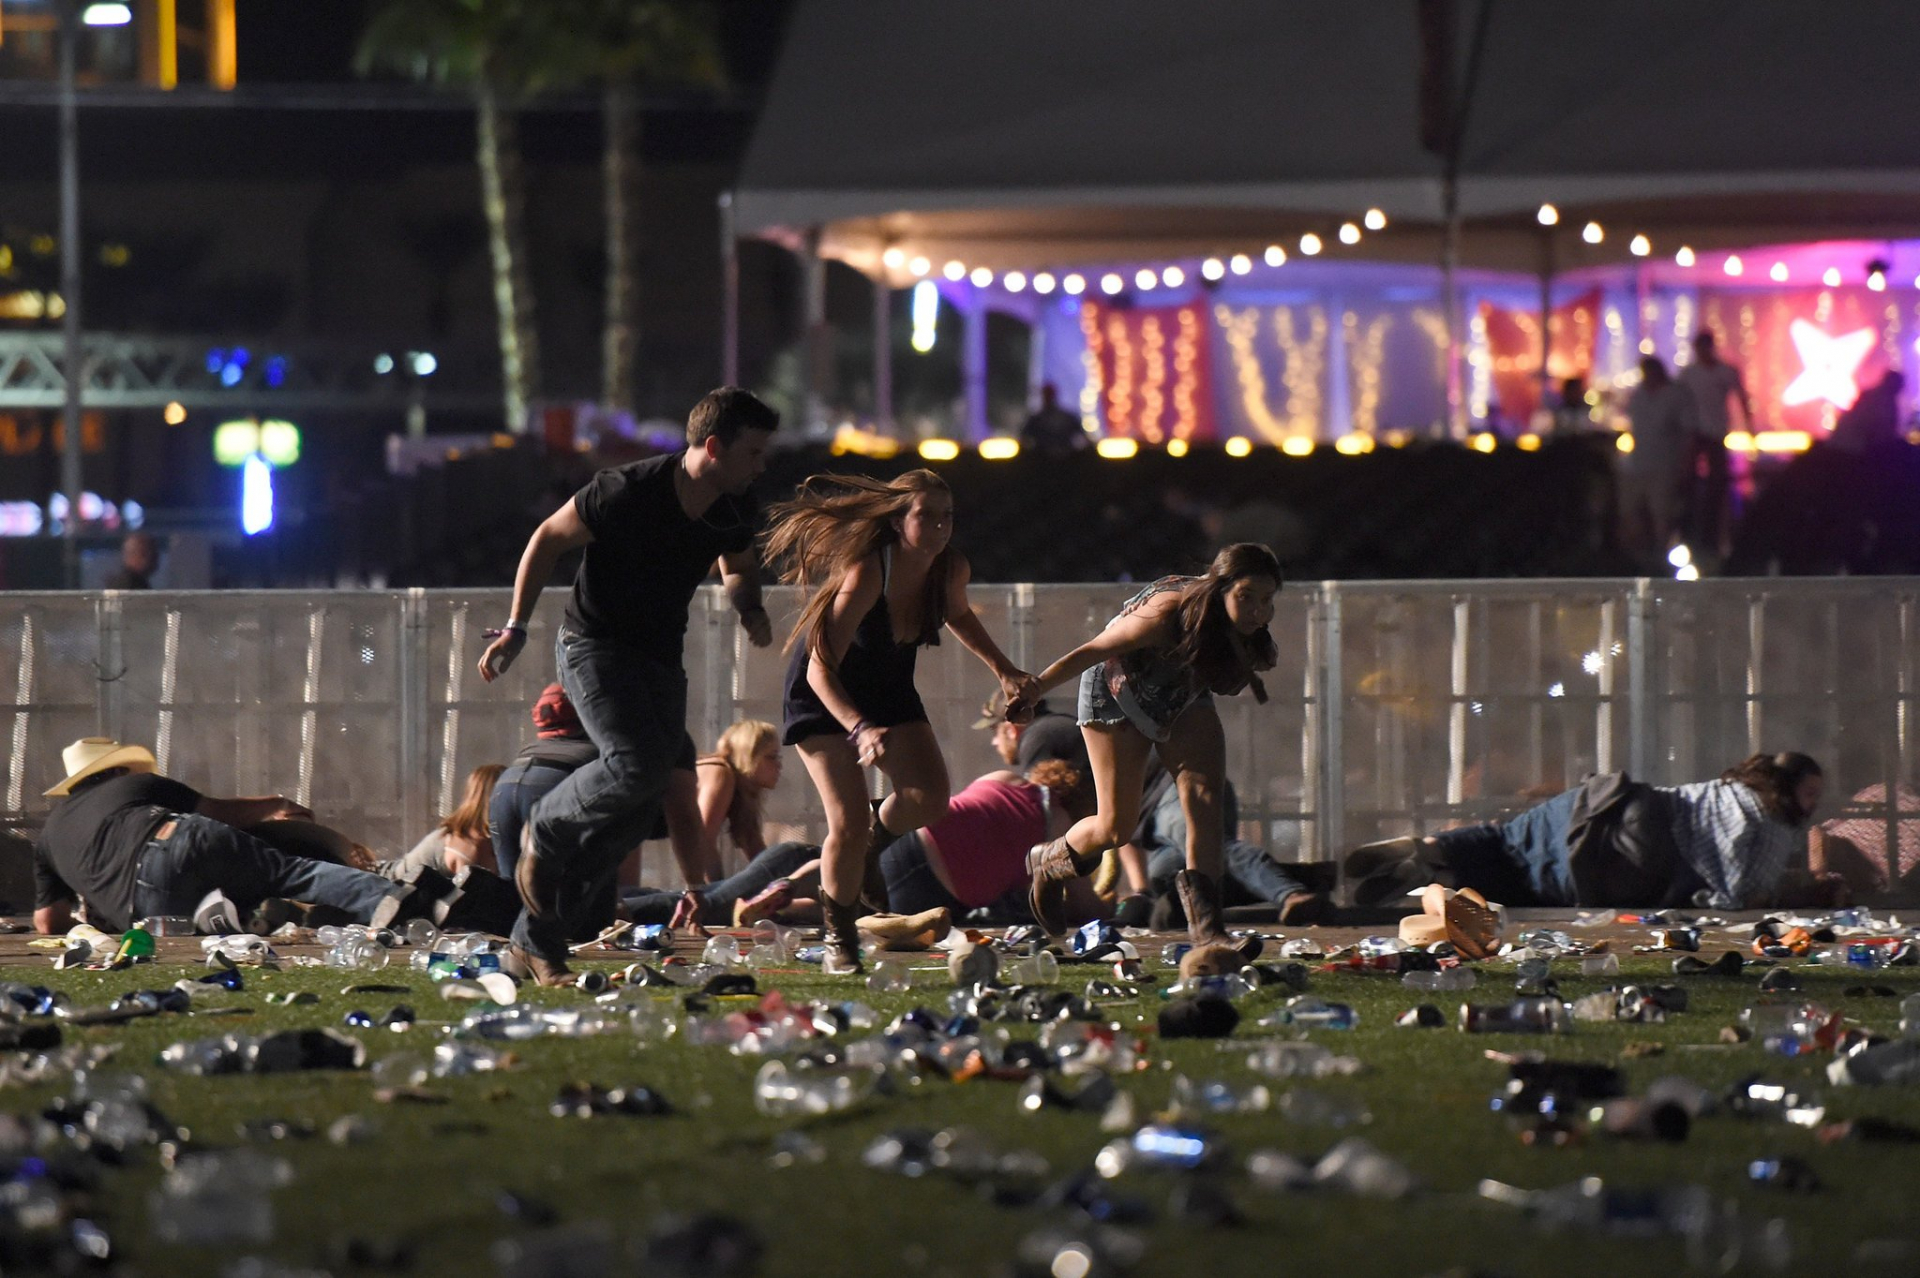 Countryénekes koncertjén történt mészárlás Las Vegasban